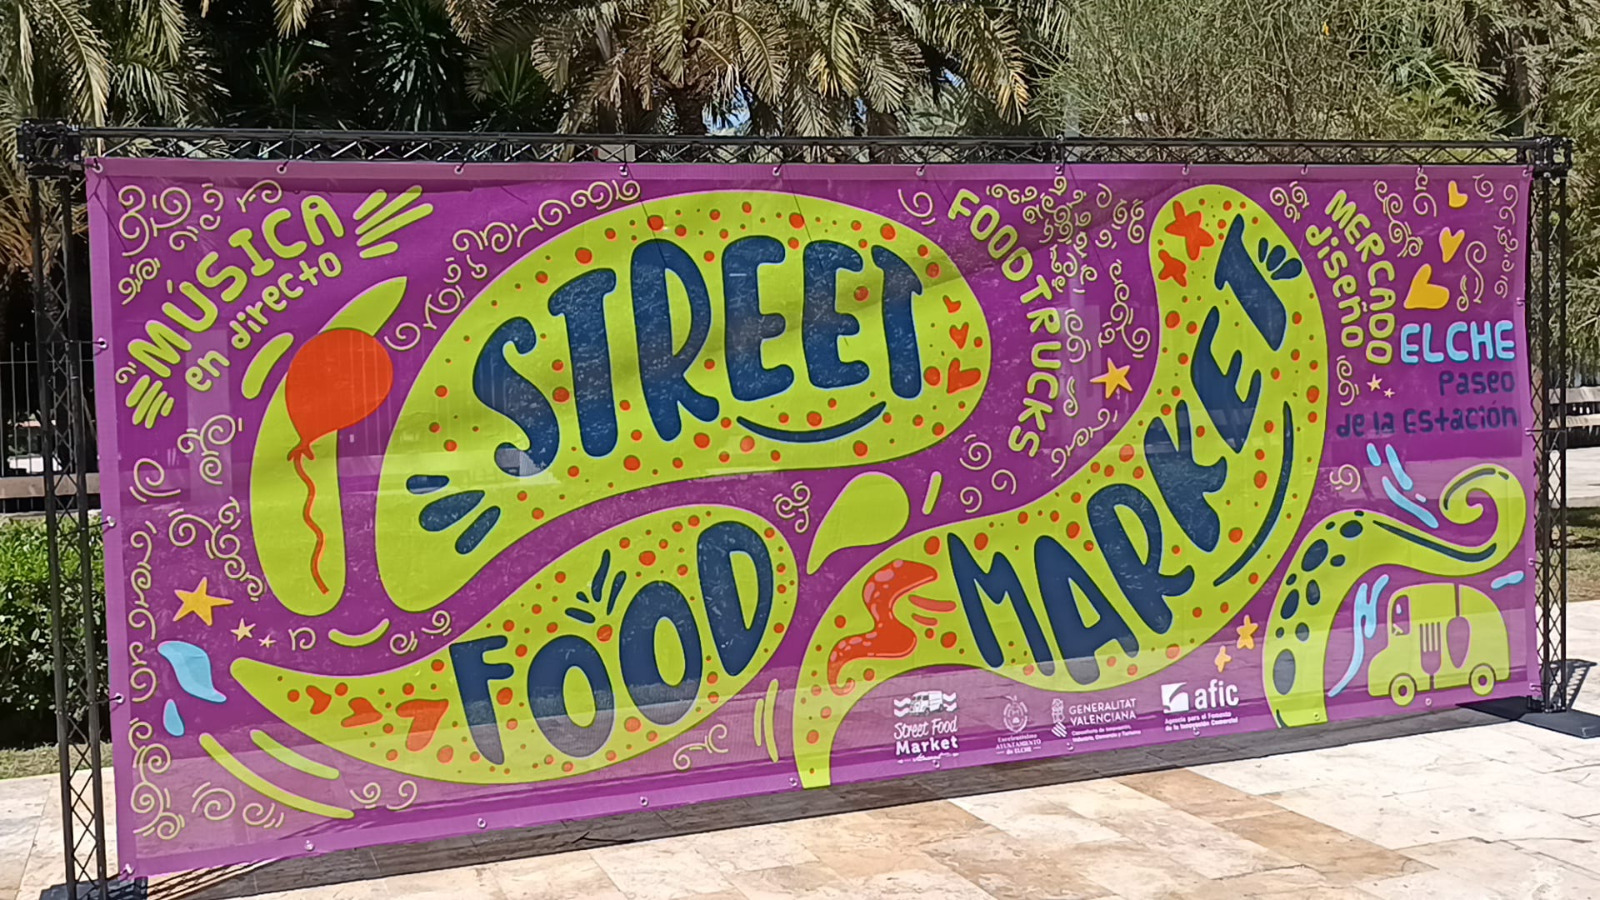 Llega la IX edición de ‘Elx Street Food Market’ a Elche